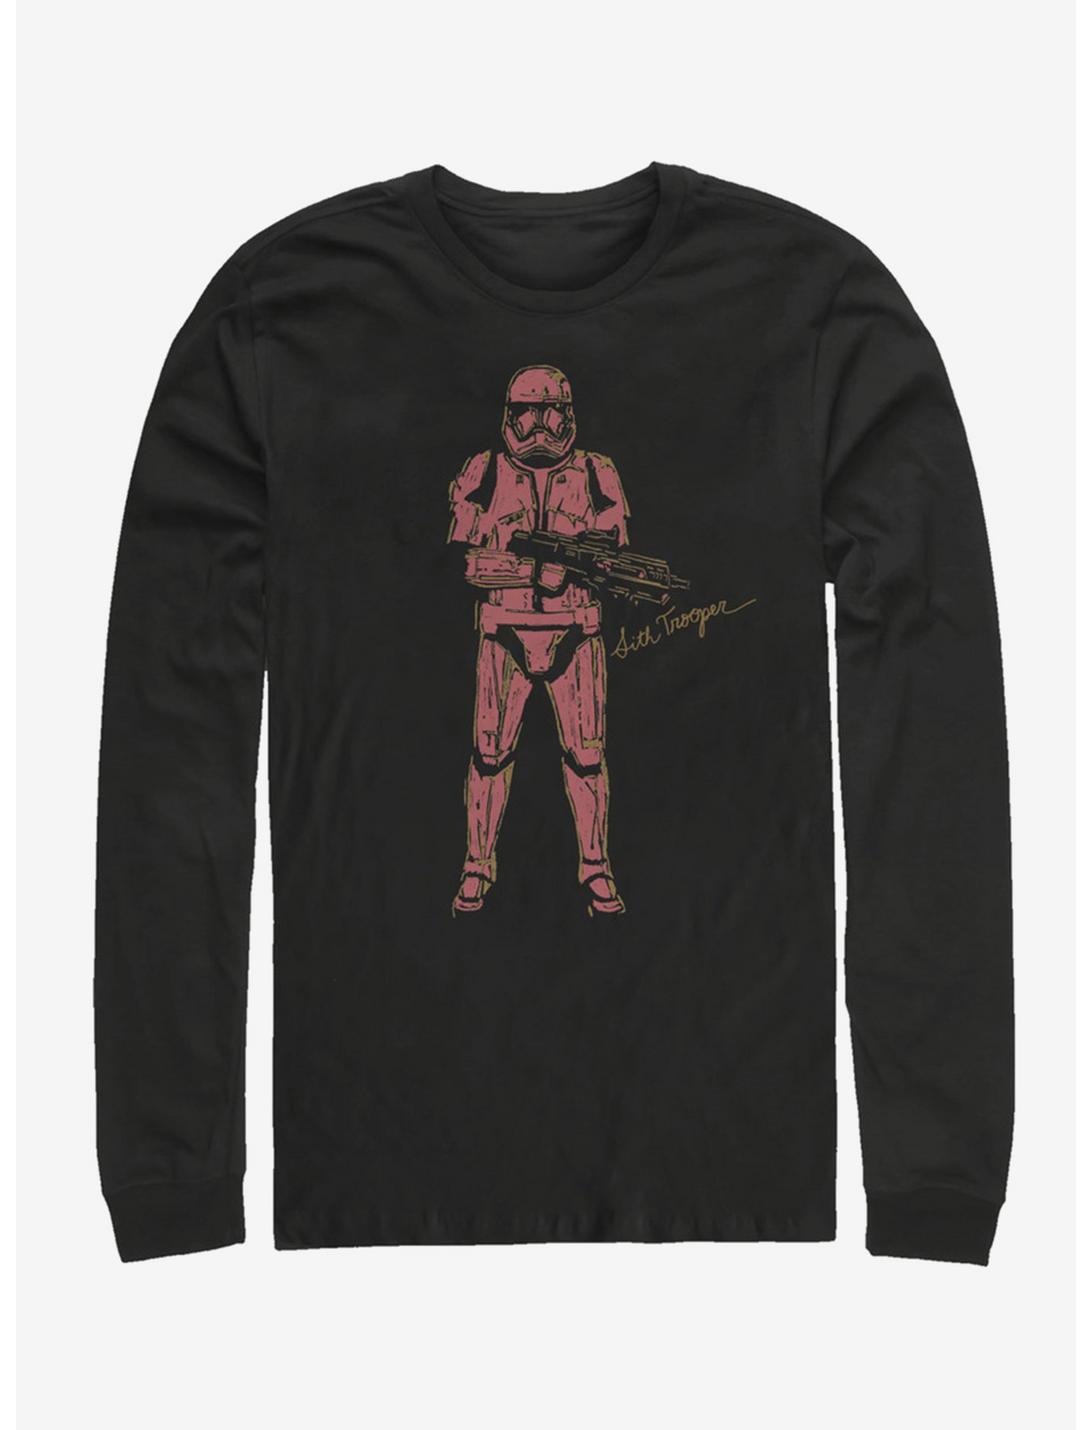 Star Wars Episode IX The Rise Of Skywalker Red Trooper Long-Sleeve T-Shirt, BLACK, hi-res